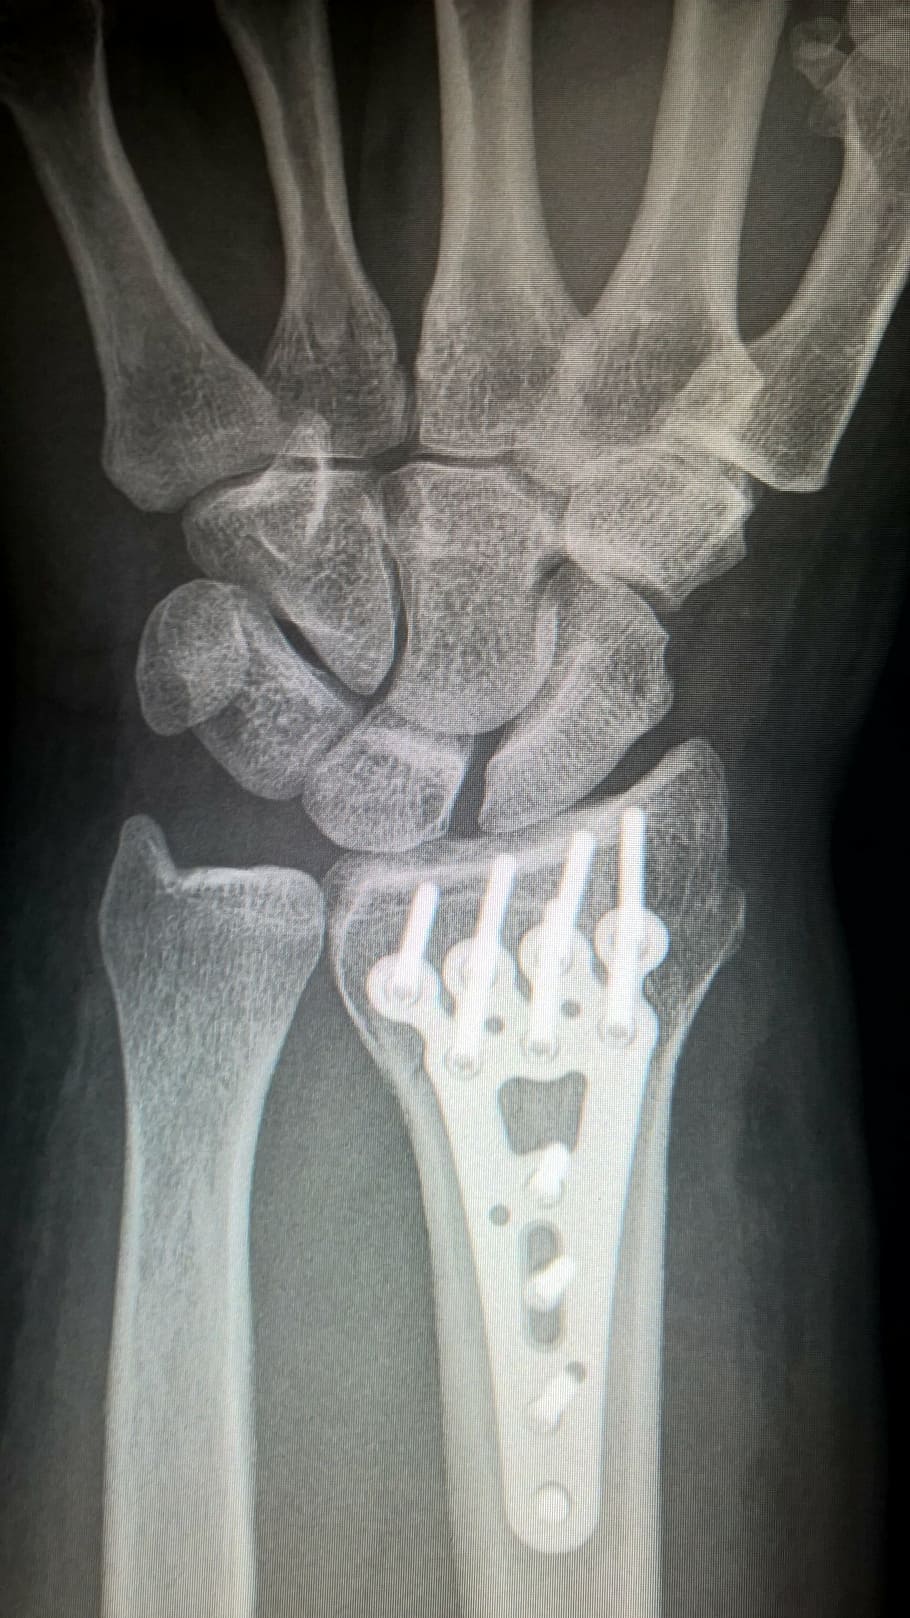 腕のX線, 骨折した腕, プレート固定, チタンプレート, 橈骨の骨折, 手首, 手術, 外傷手術, X線画像, 骨